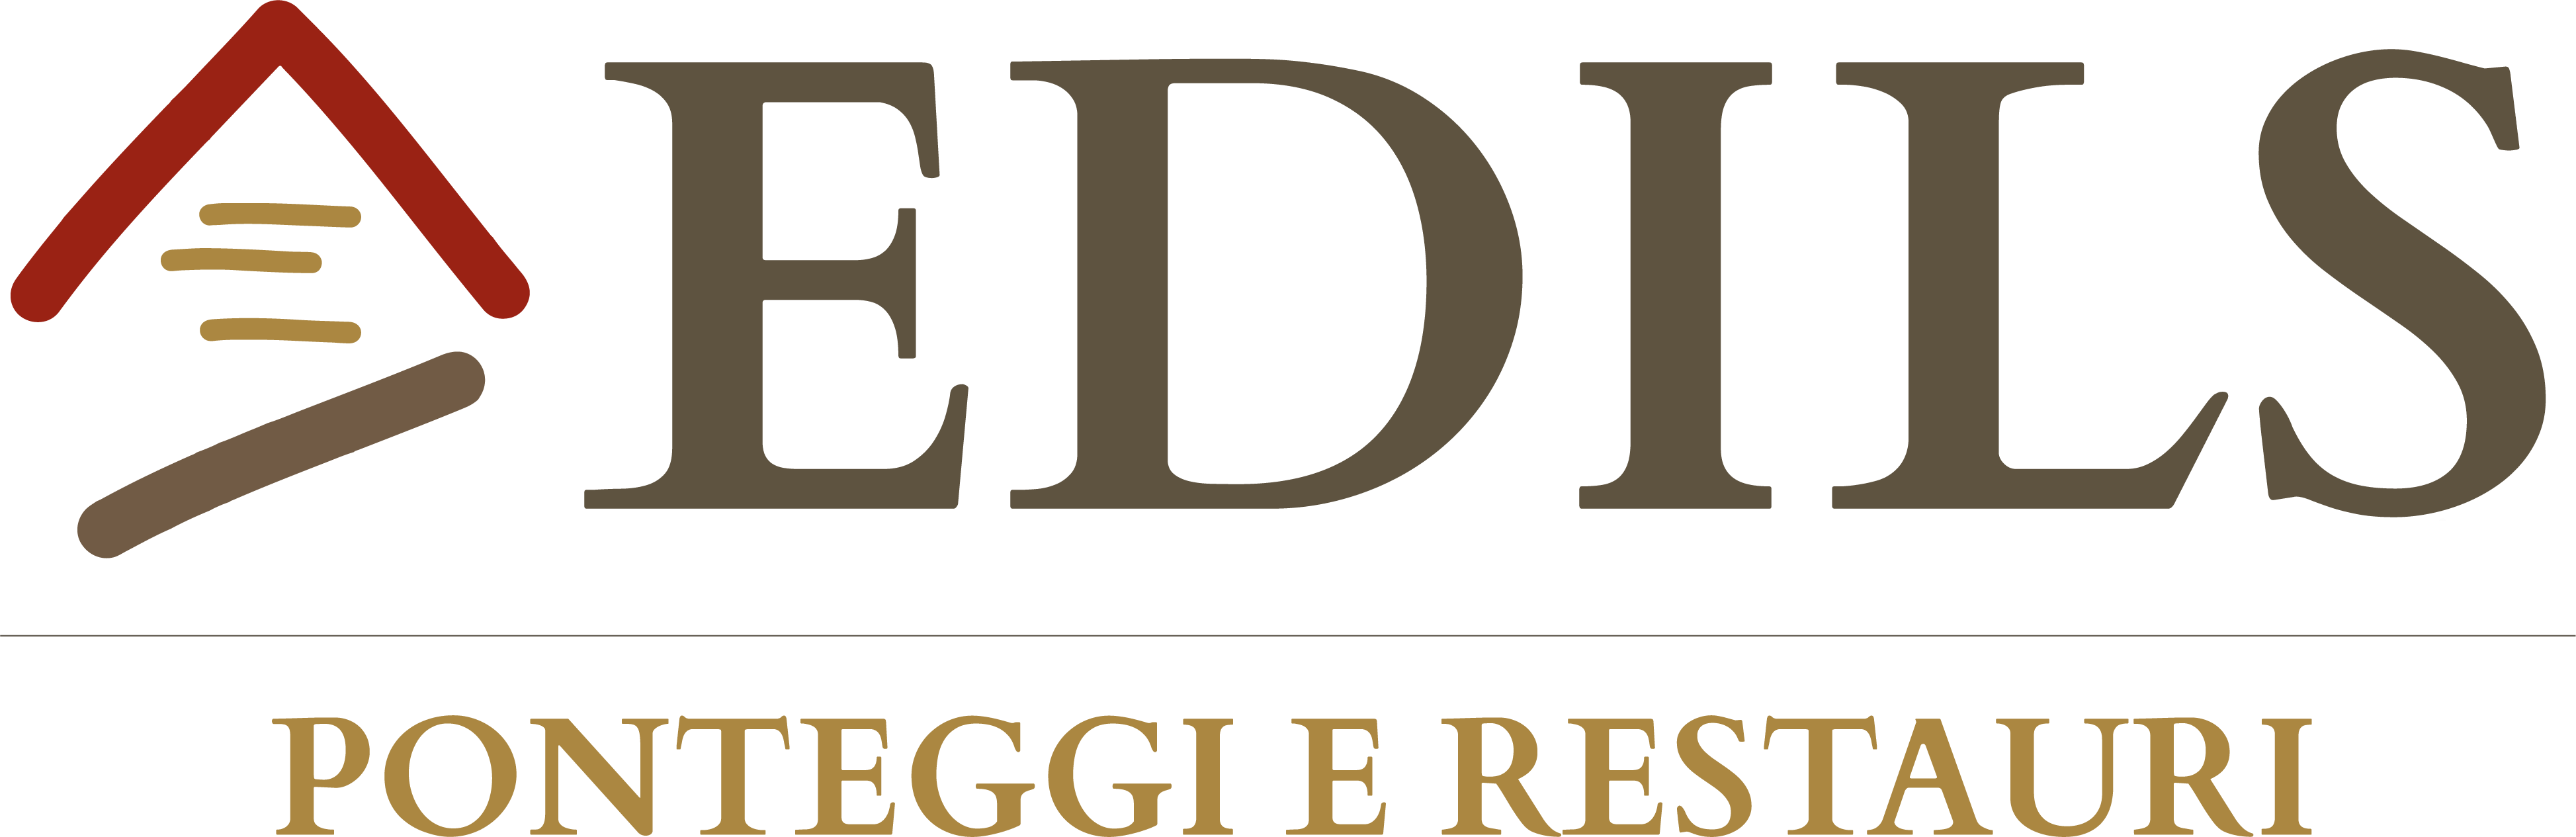 Aedils Ponteggi e Restauri Reggio Emilia